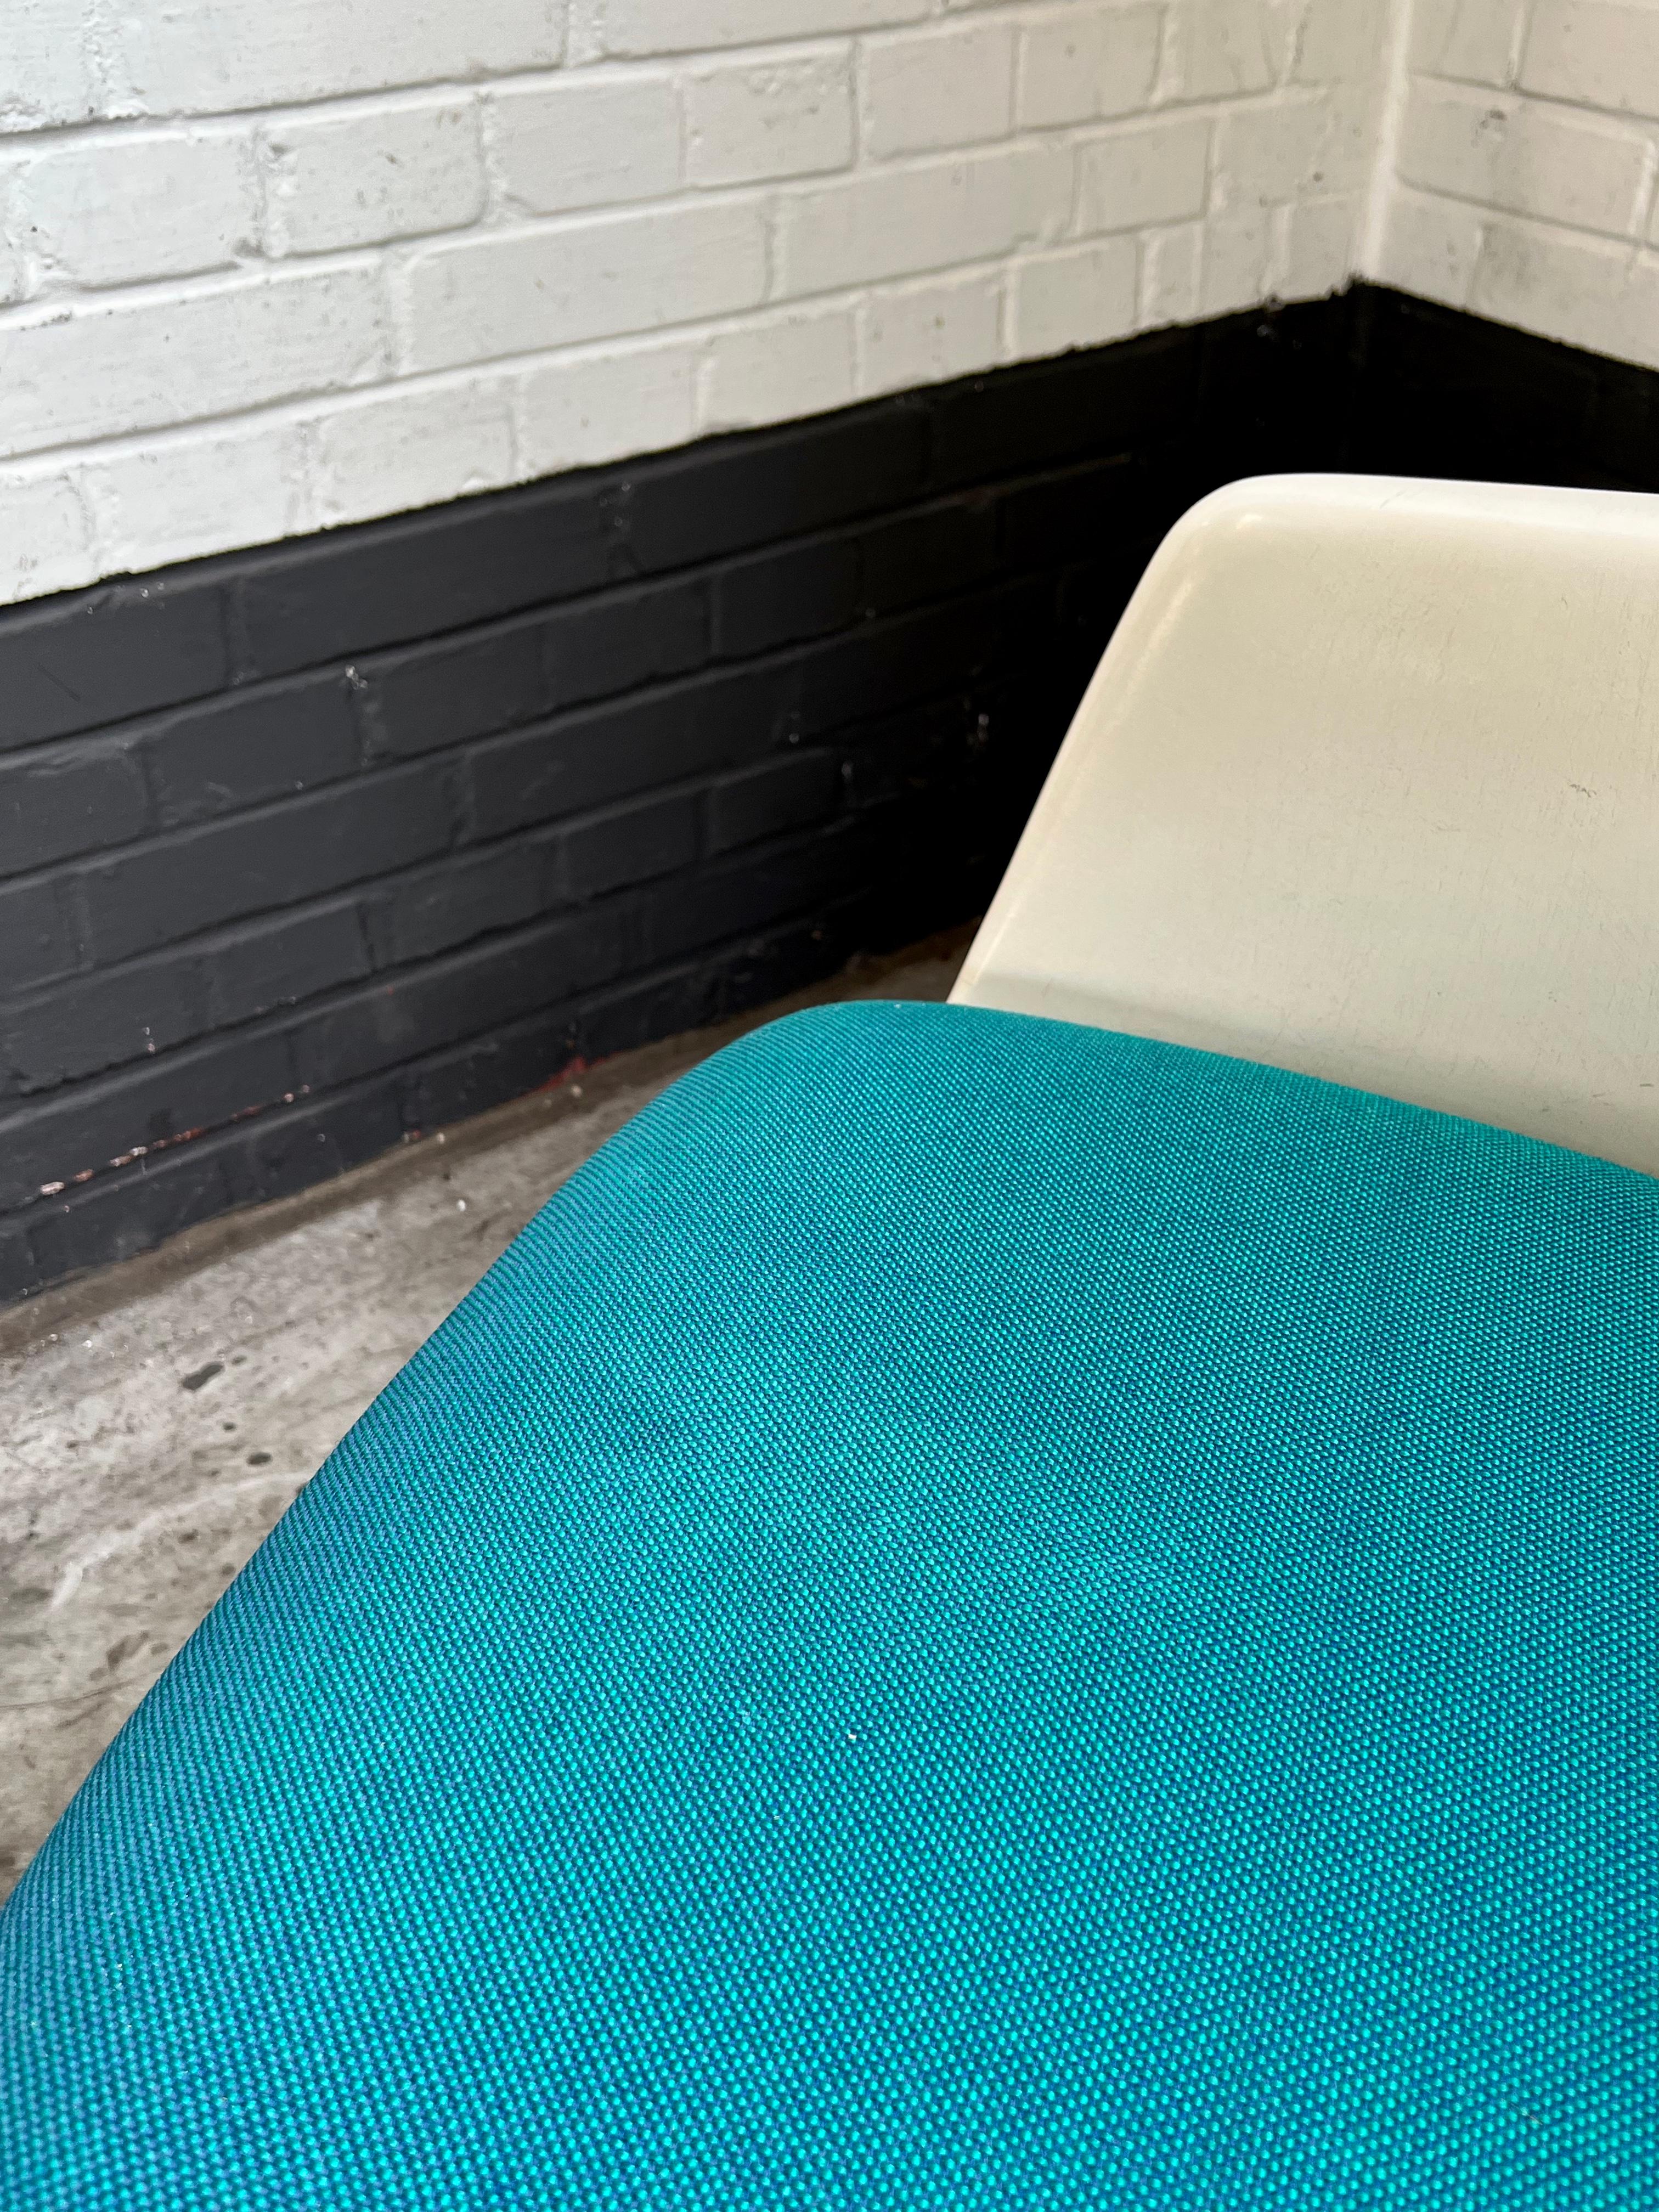 Chaise iconique du designer anglais Maurice Burke, produite par Arkana dans les années soixante.
 
Magnifique cadre blanc façonné sur une base pivotante en métal avec des pieds croisés. Revêtement bleu vif.